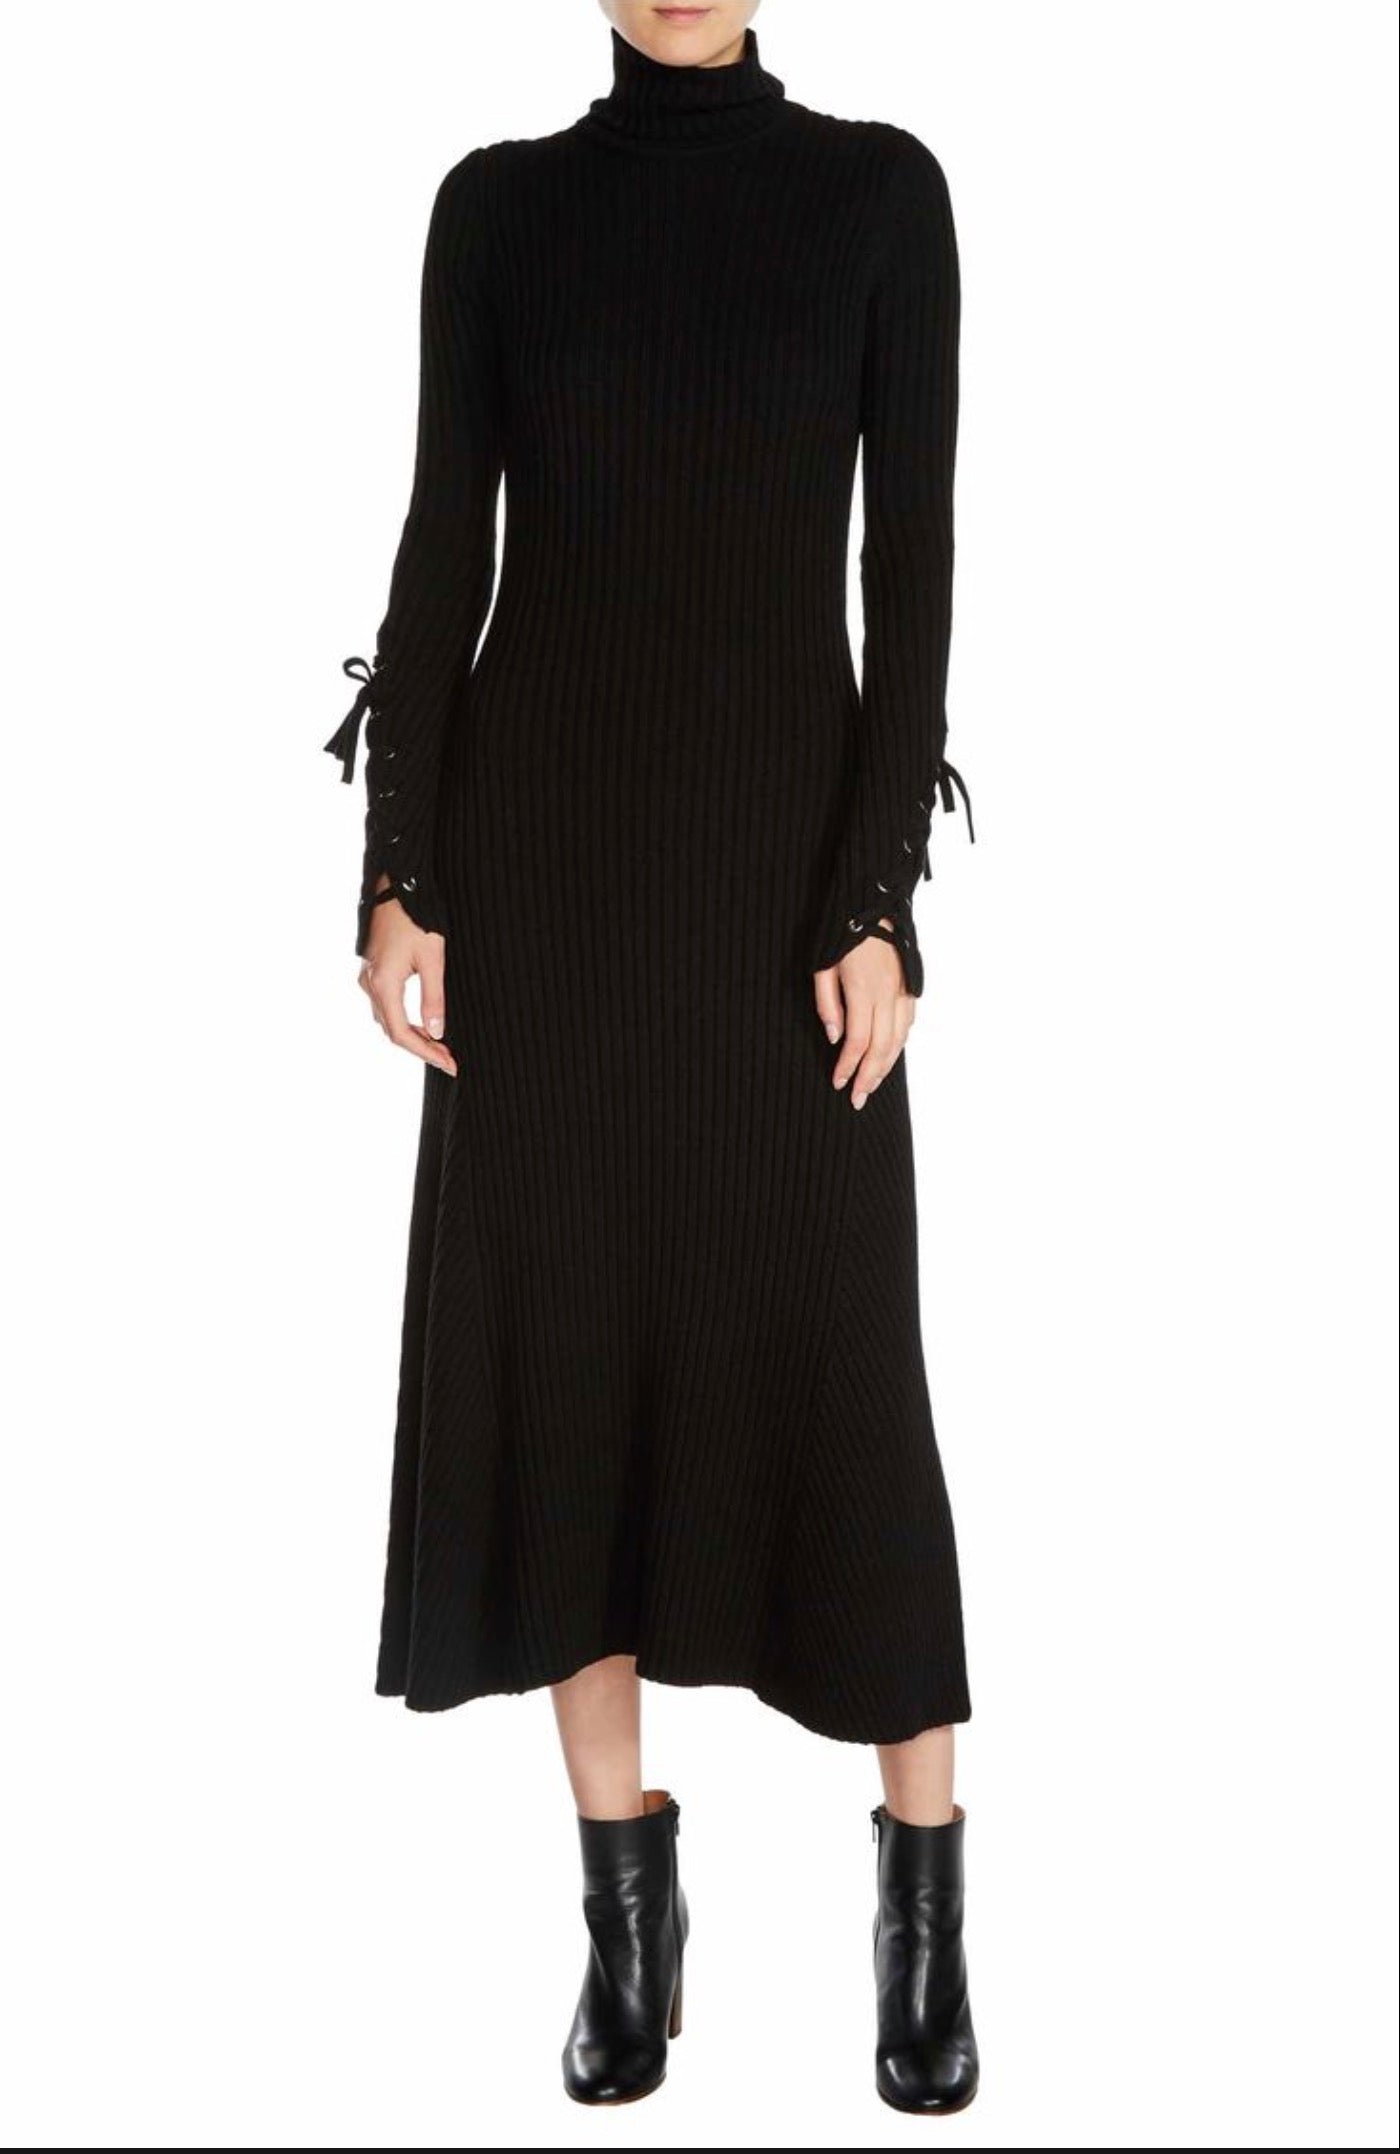 New MAJE Black Knitted Rafaela Sweater Dress